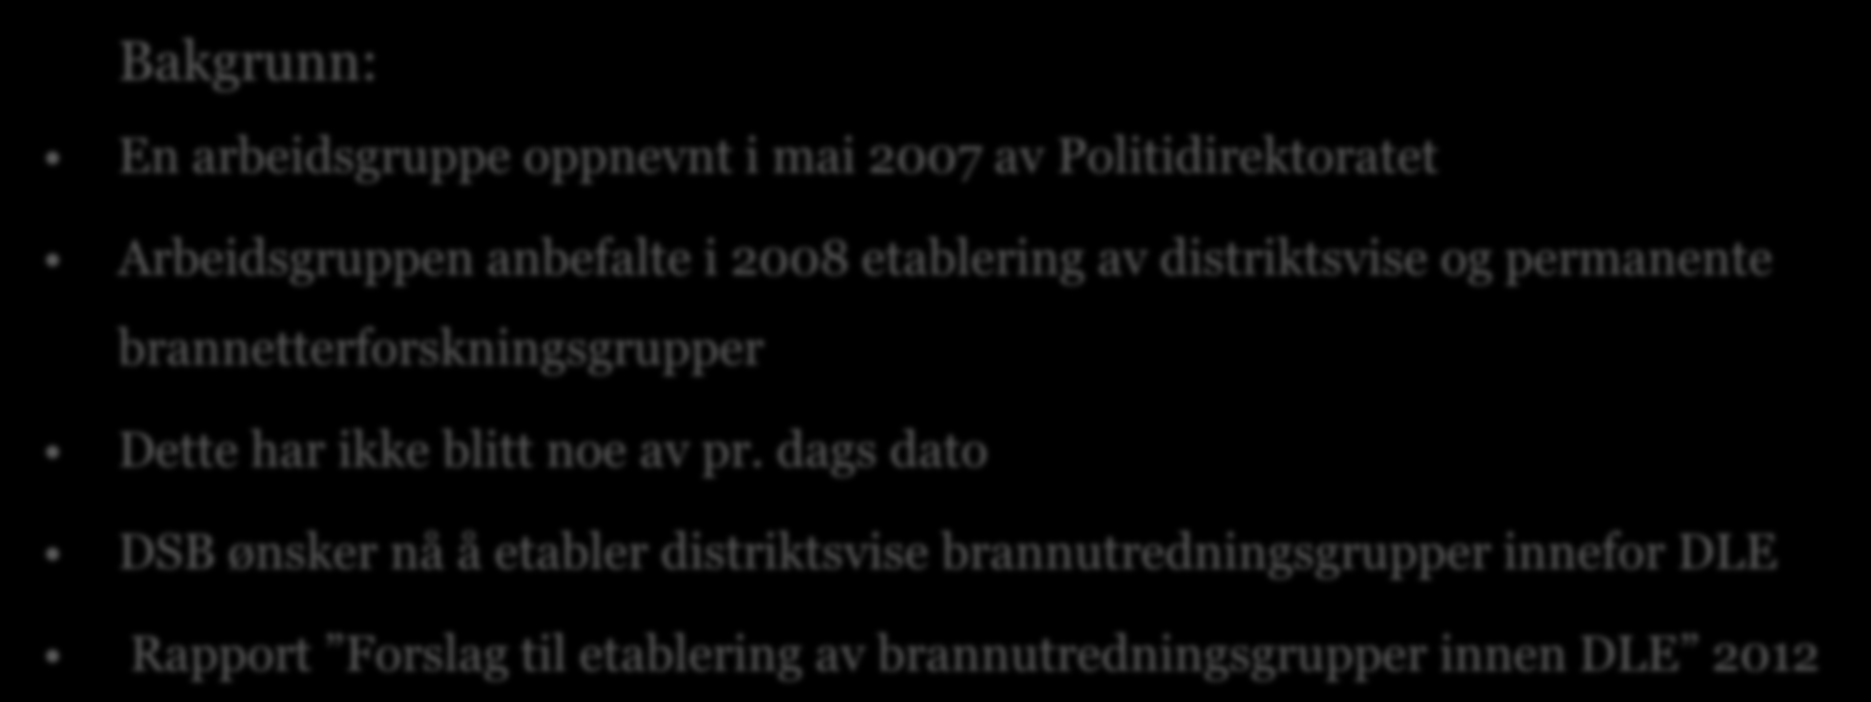 Etablering av brannutredningsgrupper innen DLE Bakgrunn: En arbeidsgruppe oppnevnt i mai 2007 av Politidirektoratet Arbeidsgruppen anbefalte i 2008 etablering av distriktsvise og permanente